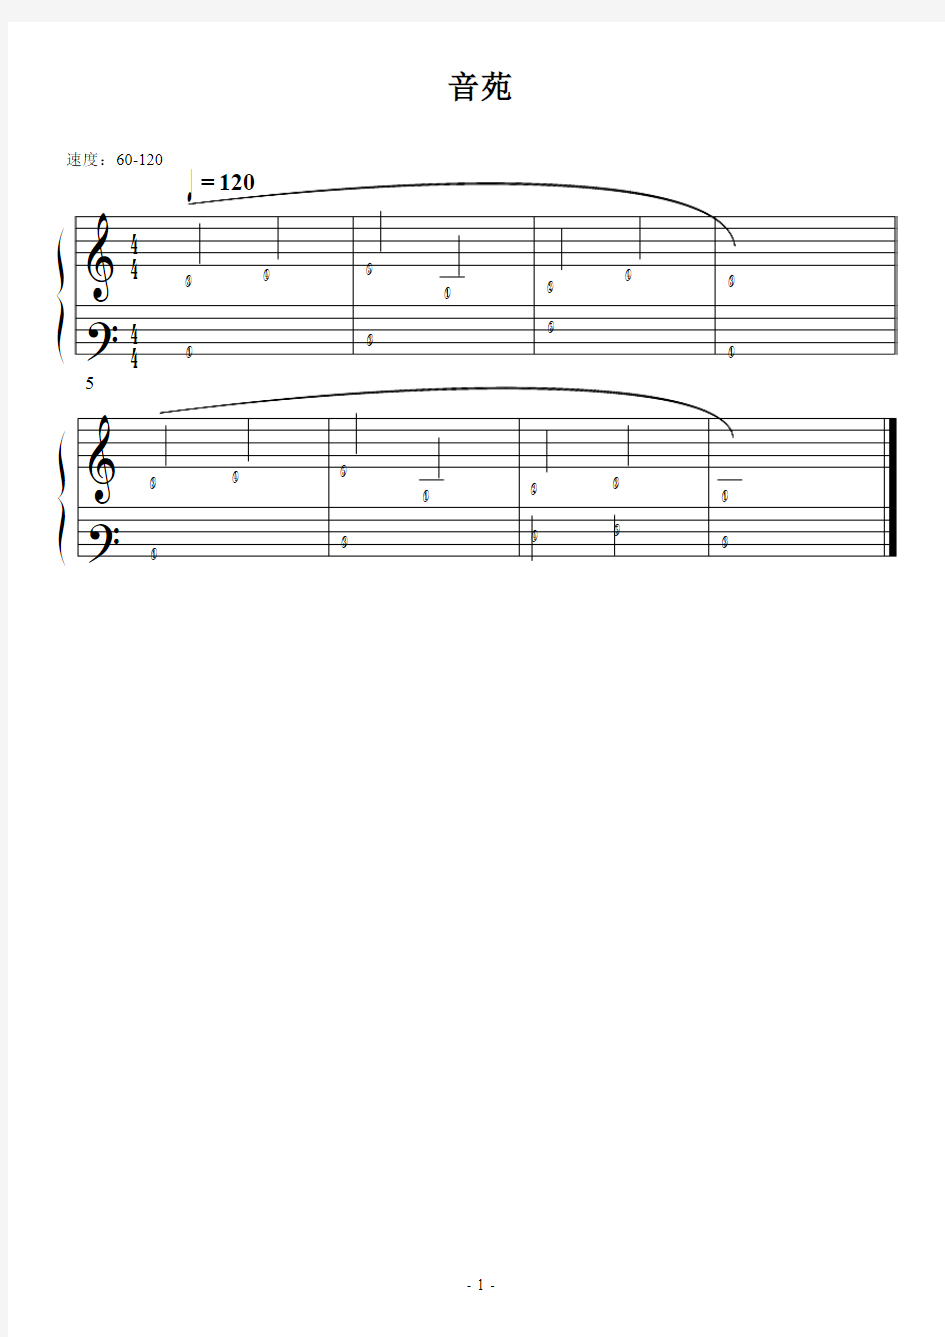 1-音苑 简五谱 符头有数字的五线谱 适用新手 钢琴谱 正谱